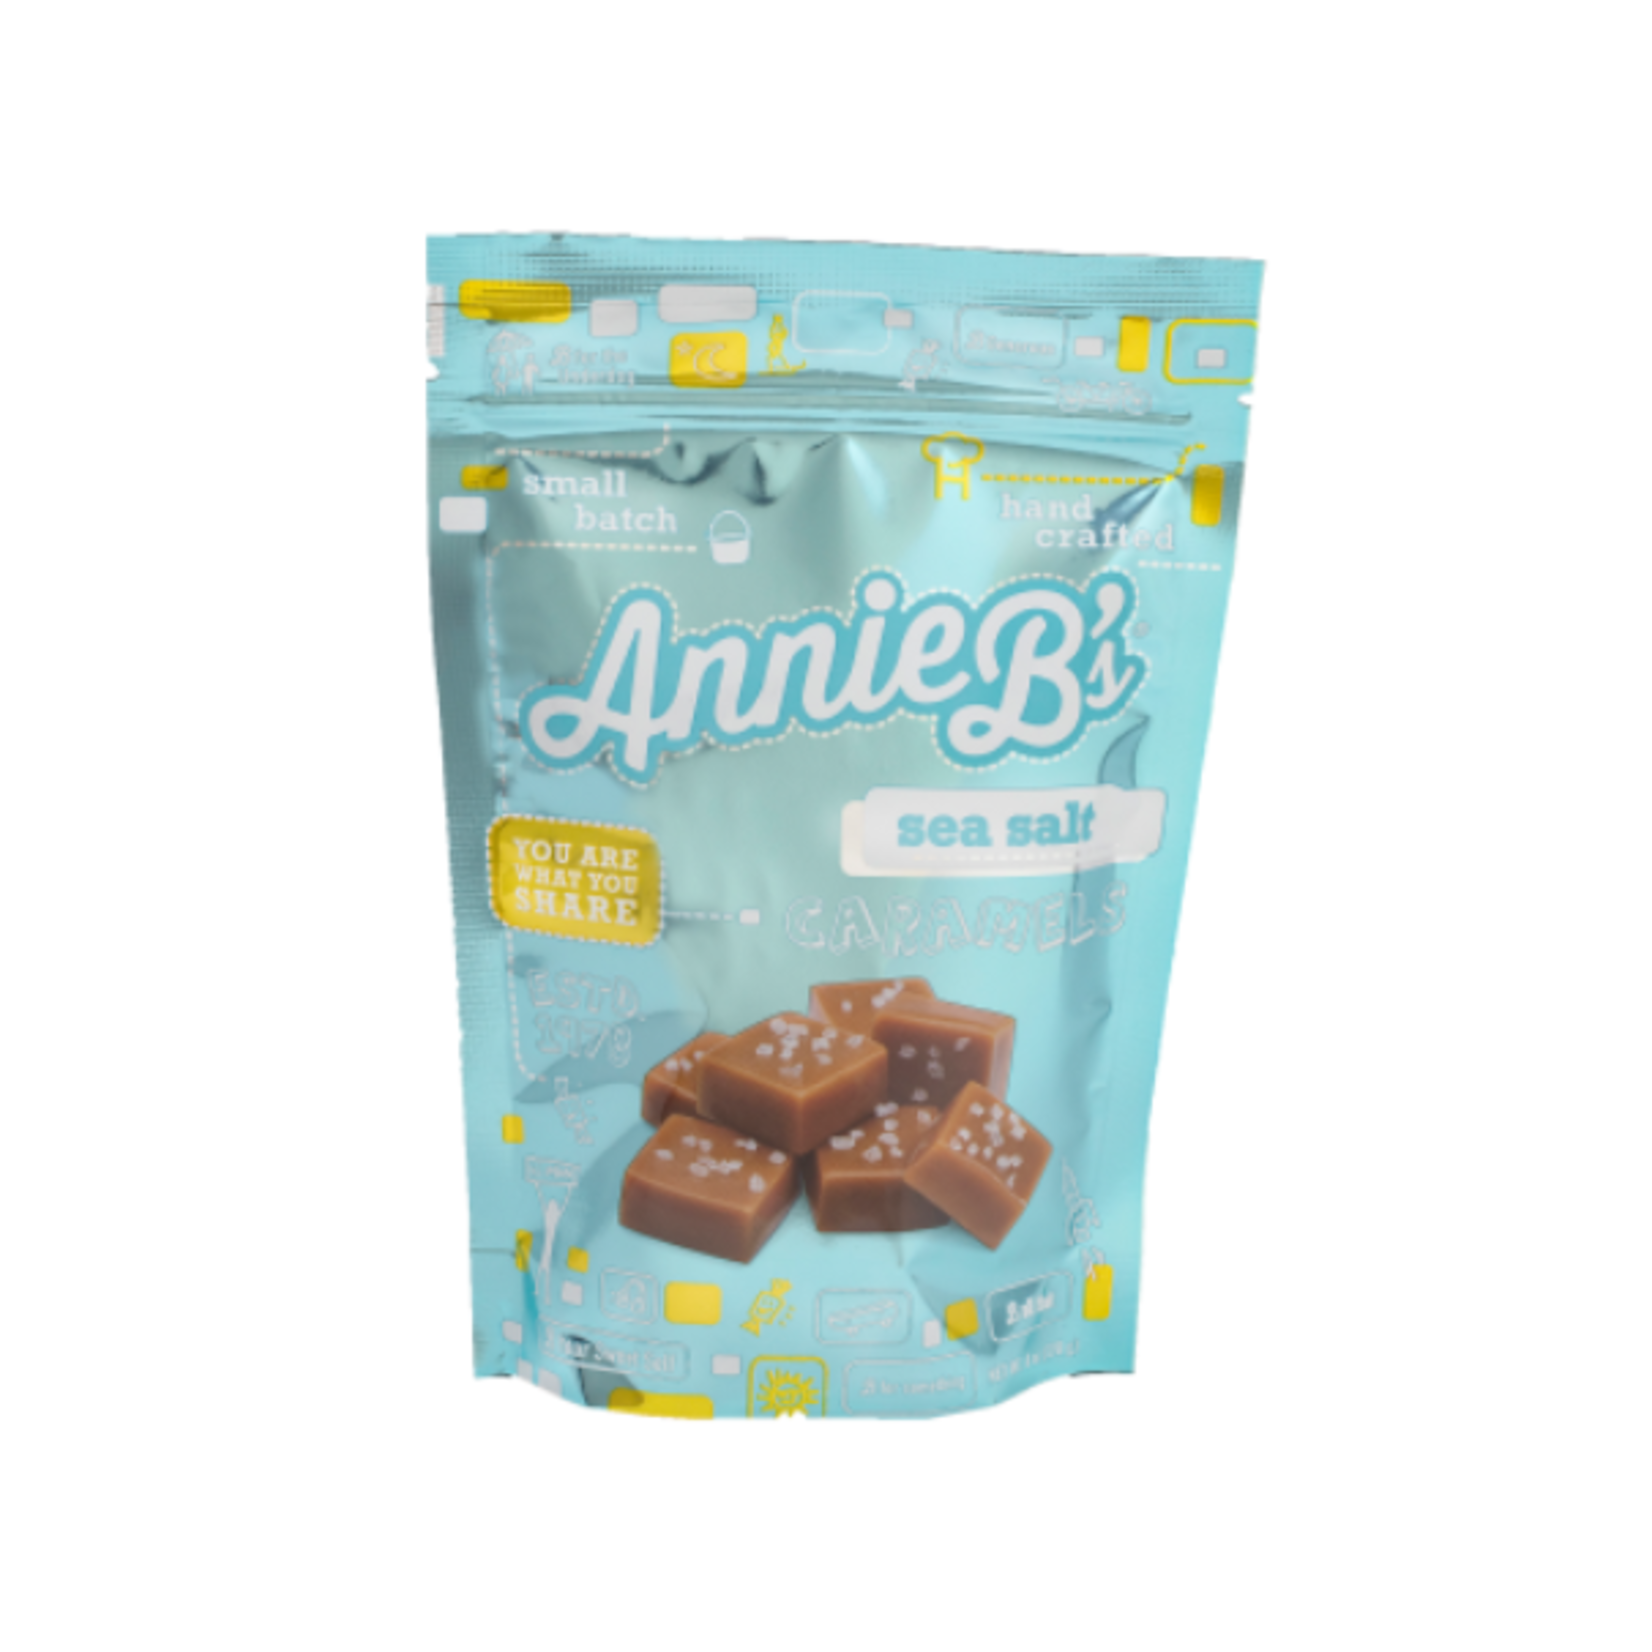 Annie B's Annie B's Sea Salt Caramel Pouch 6oz